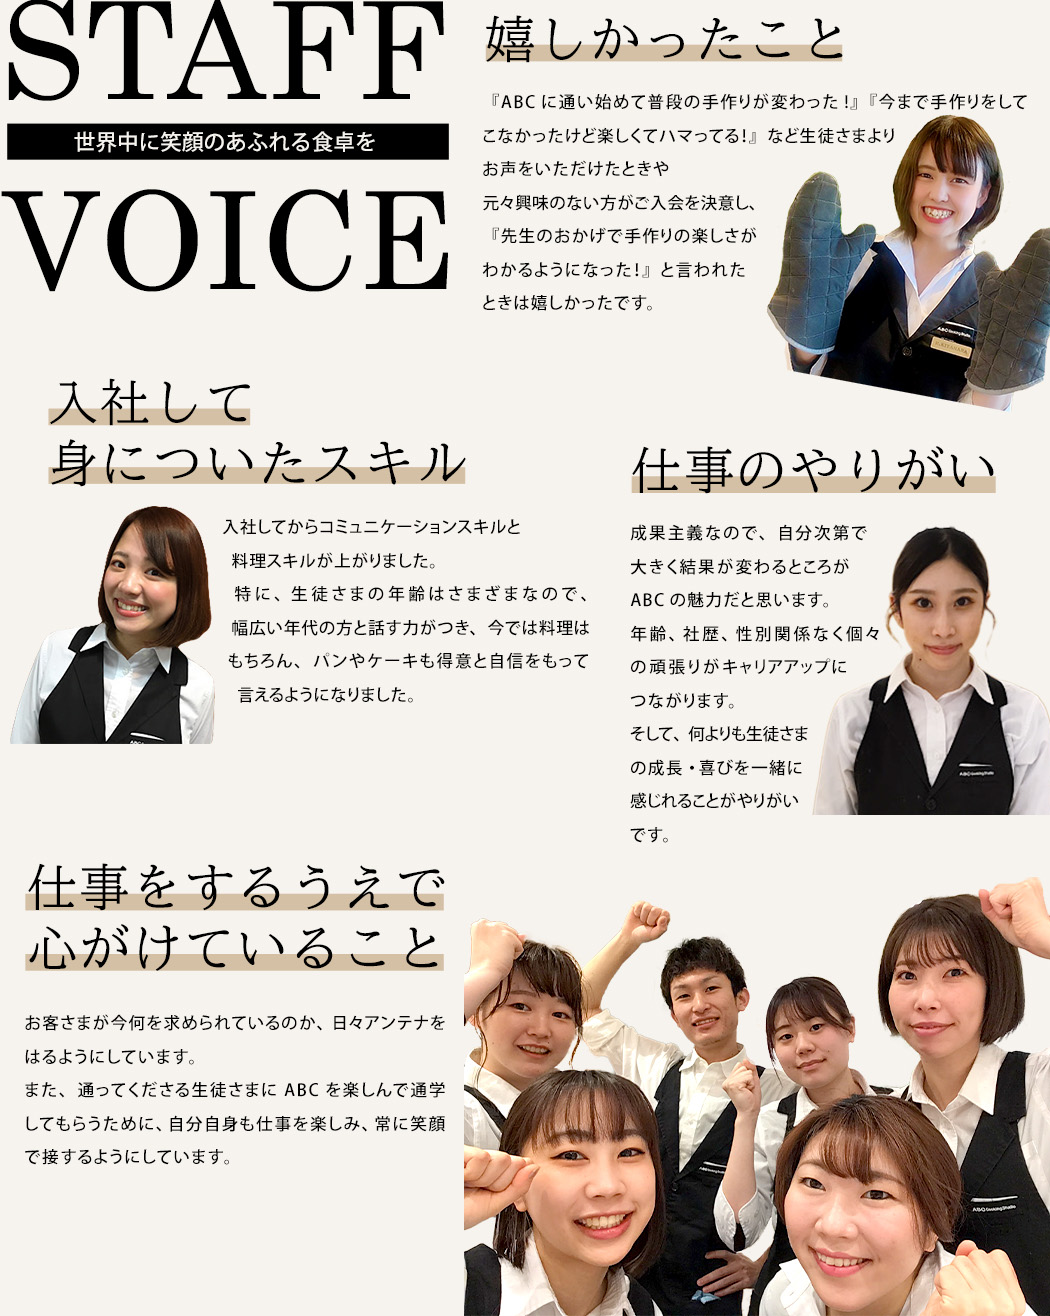 Staff voice